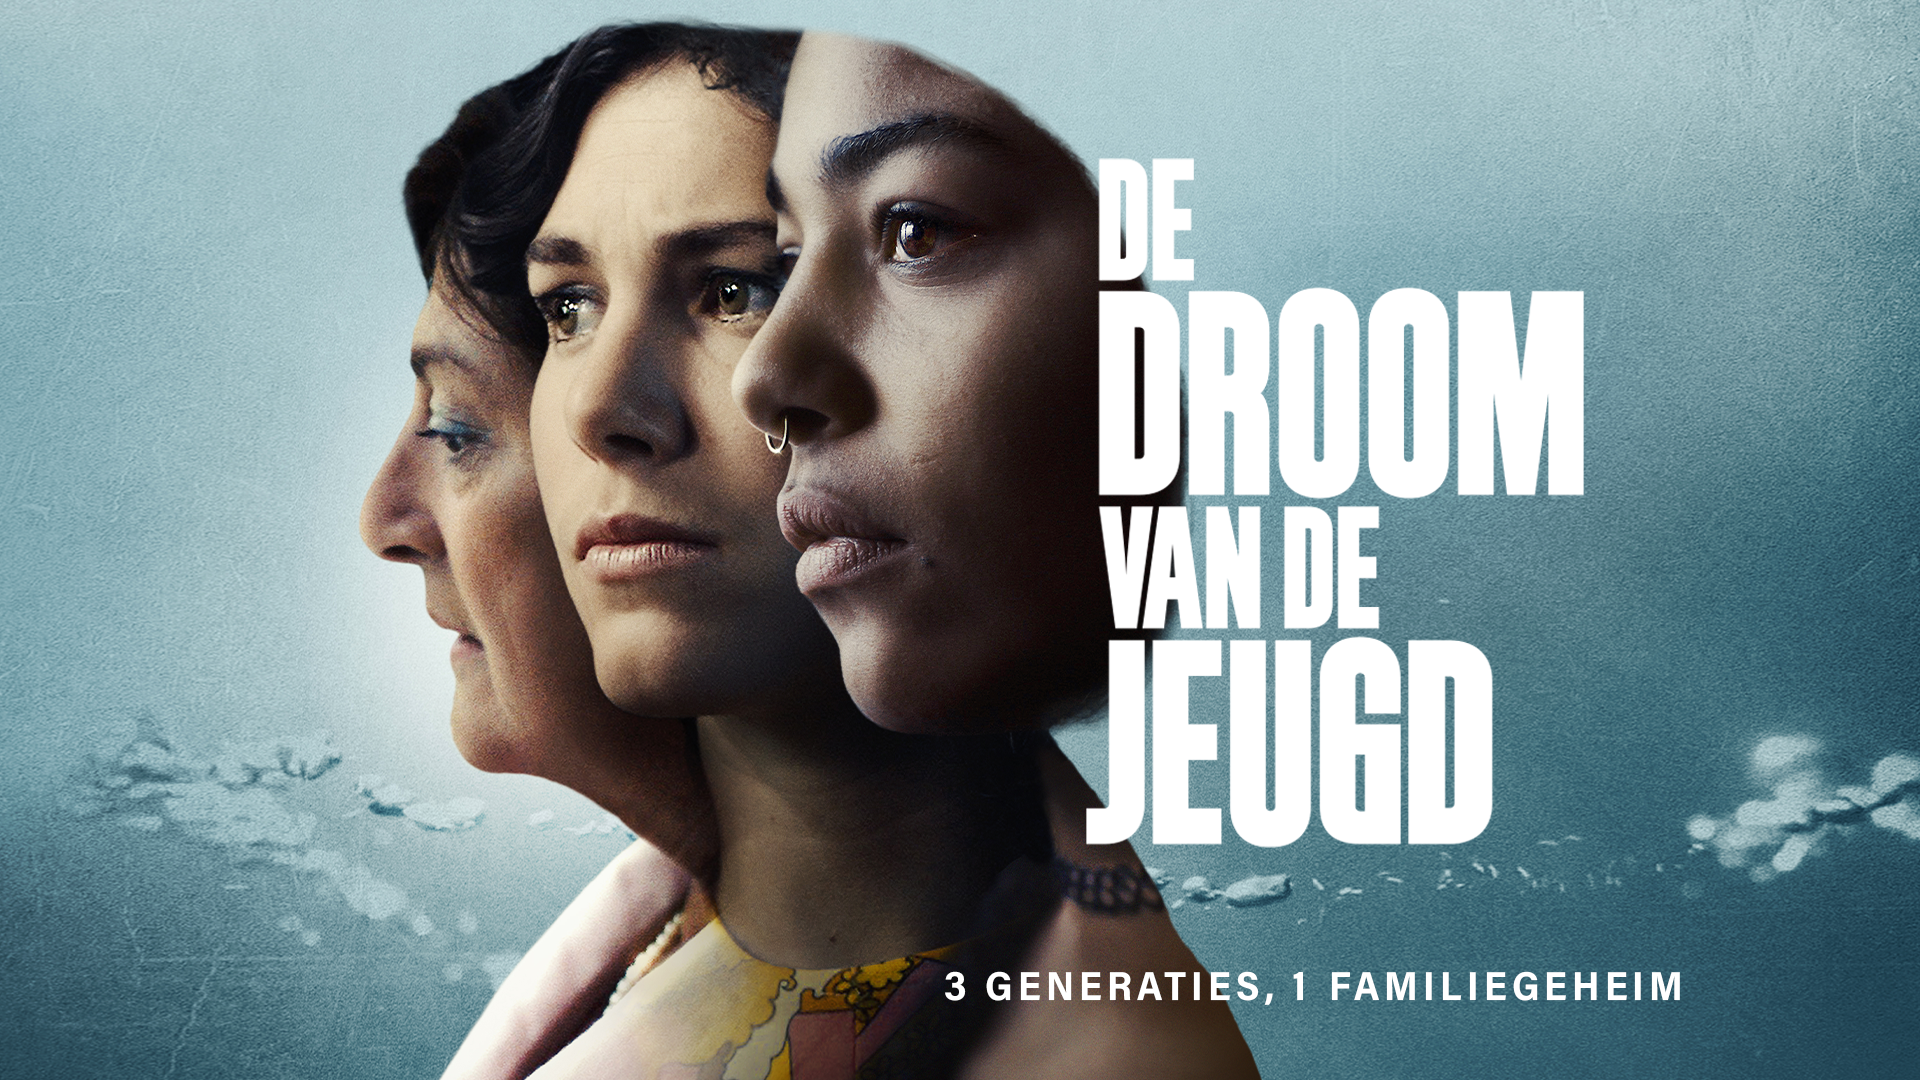 DE DROOM VAN DE JEUGD directed by Bram Schouw